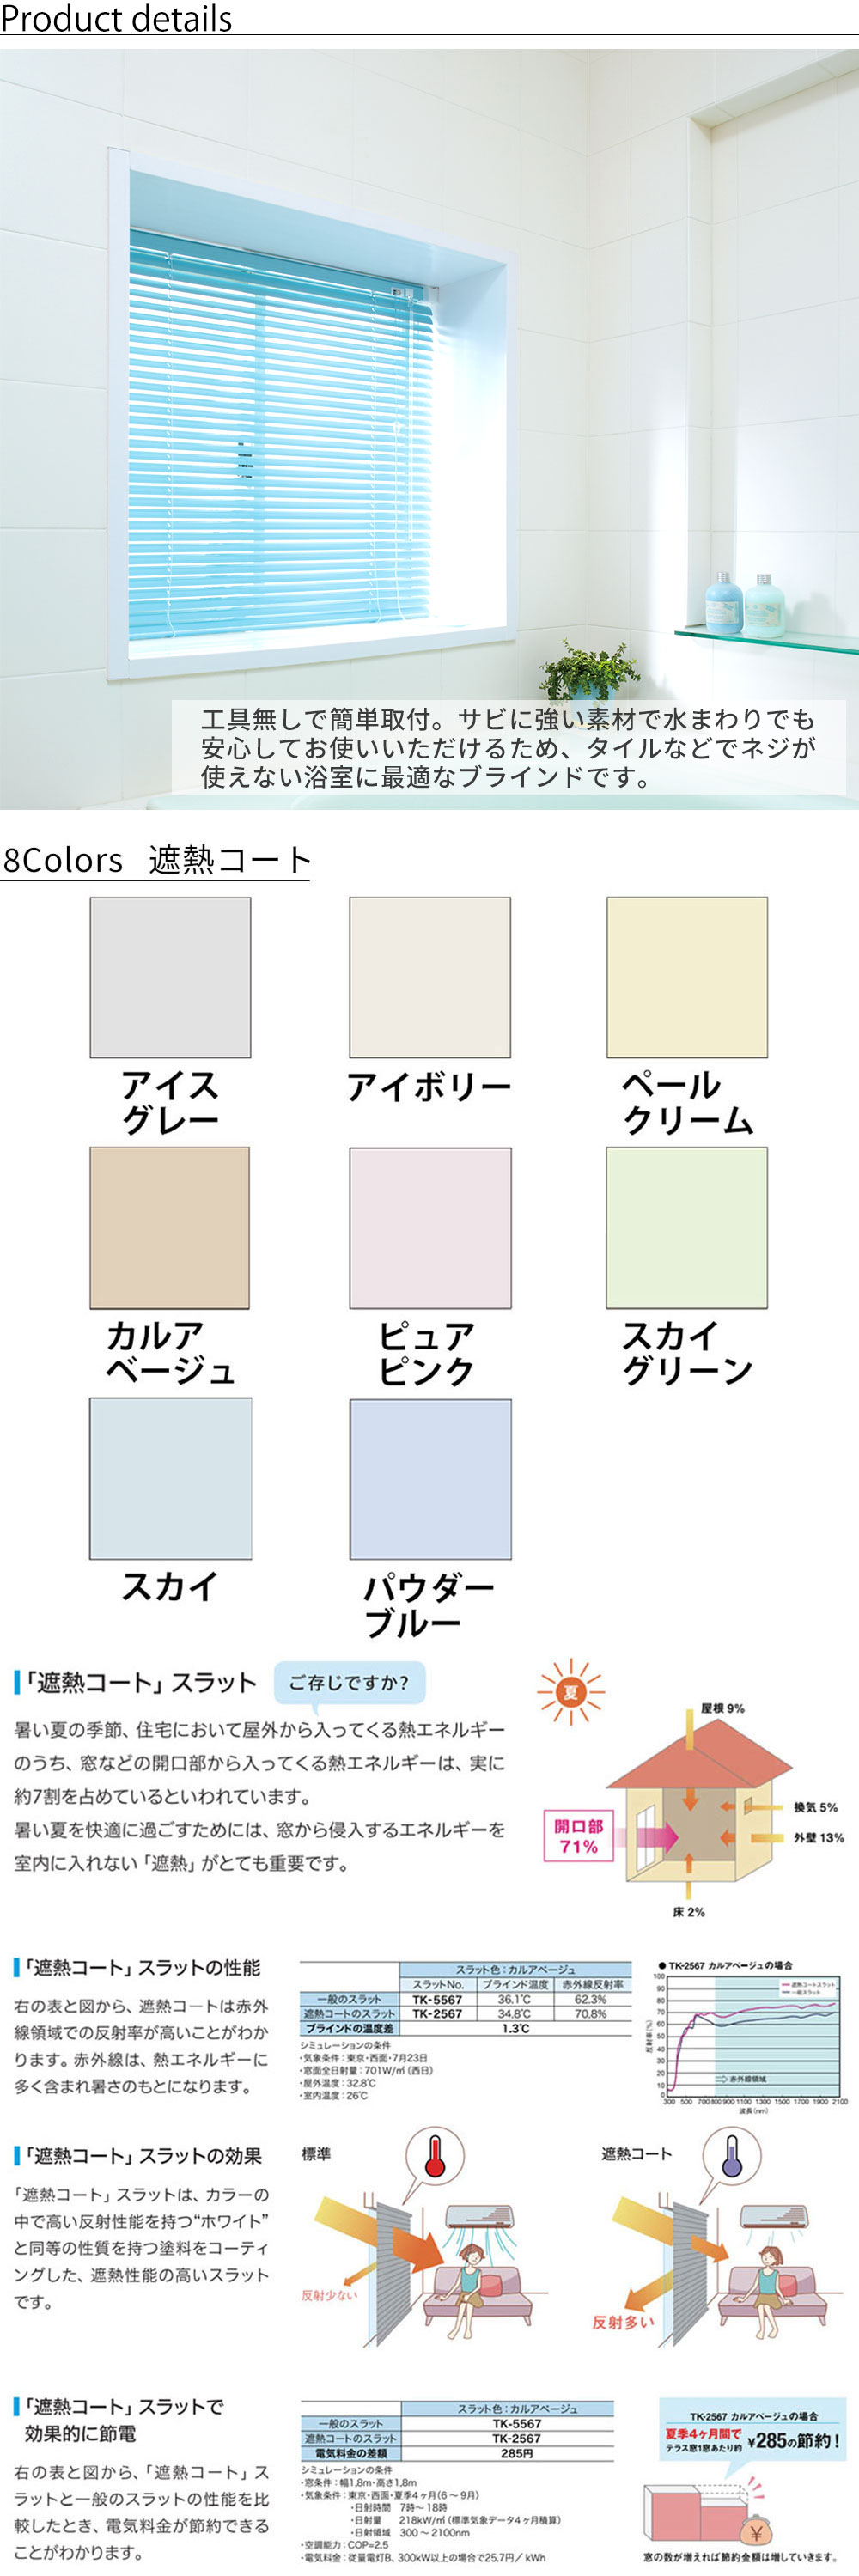 7175円 春新作の COGITO POPPURPLE CW3.0-004-01